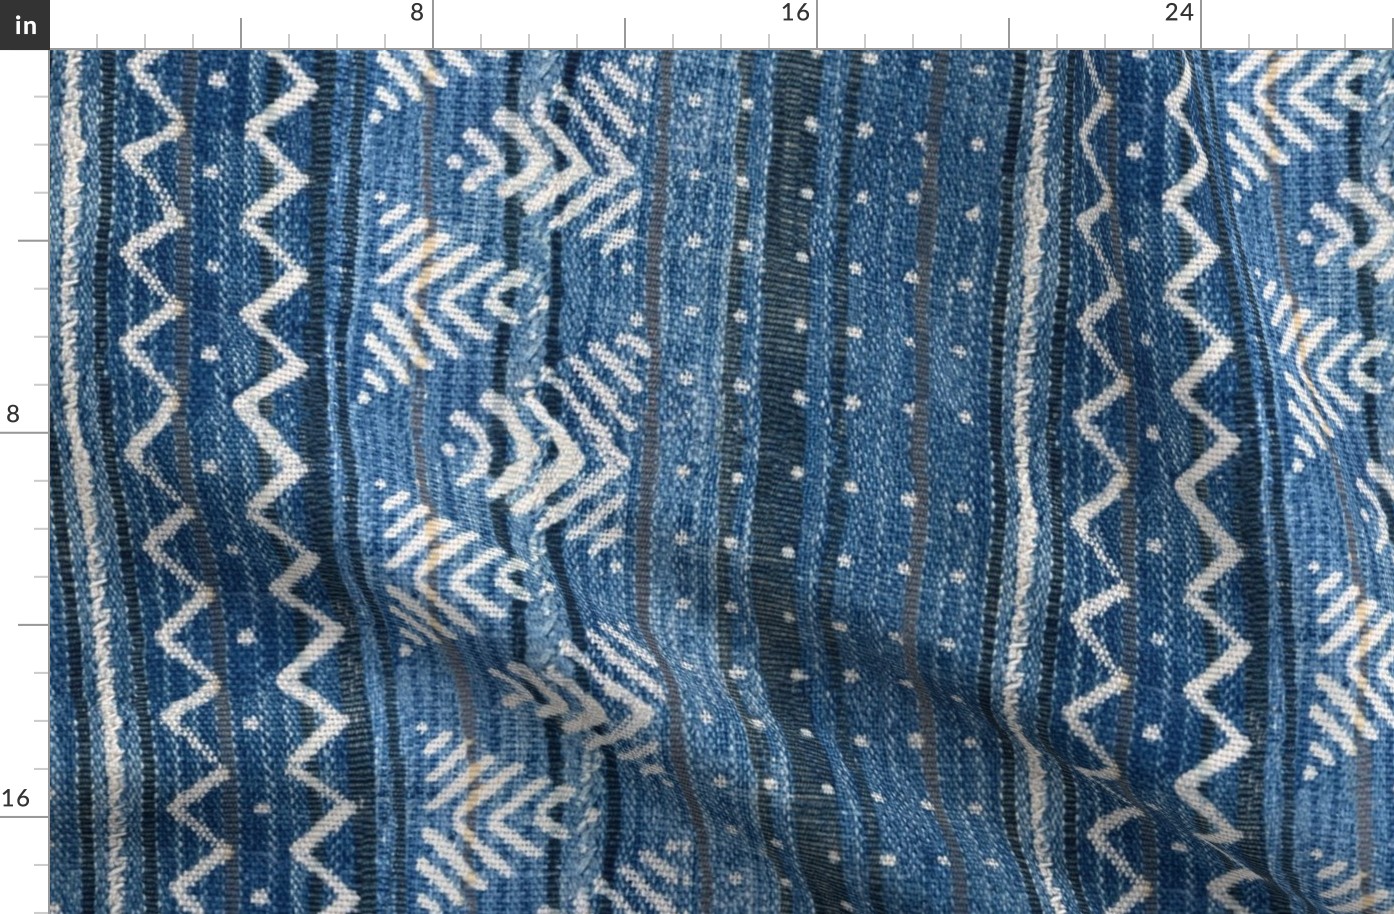 denim mud cloth stripe 24 inch repeat